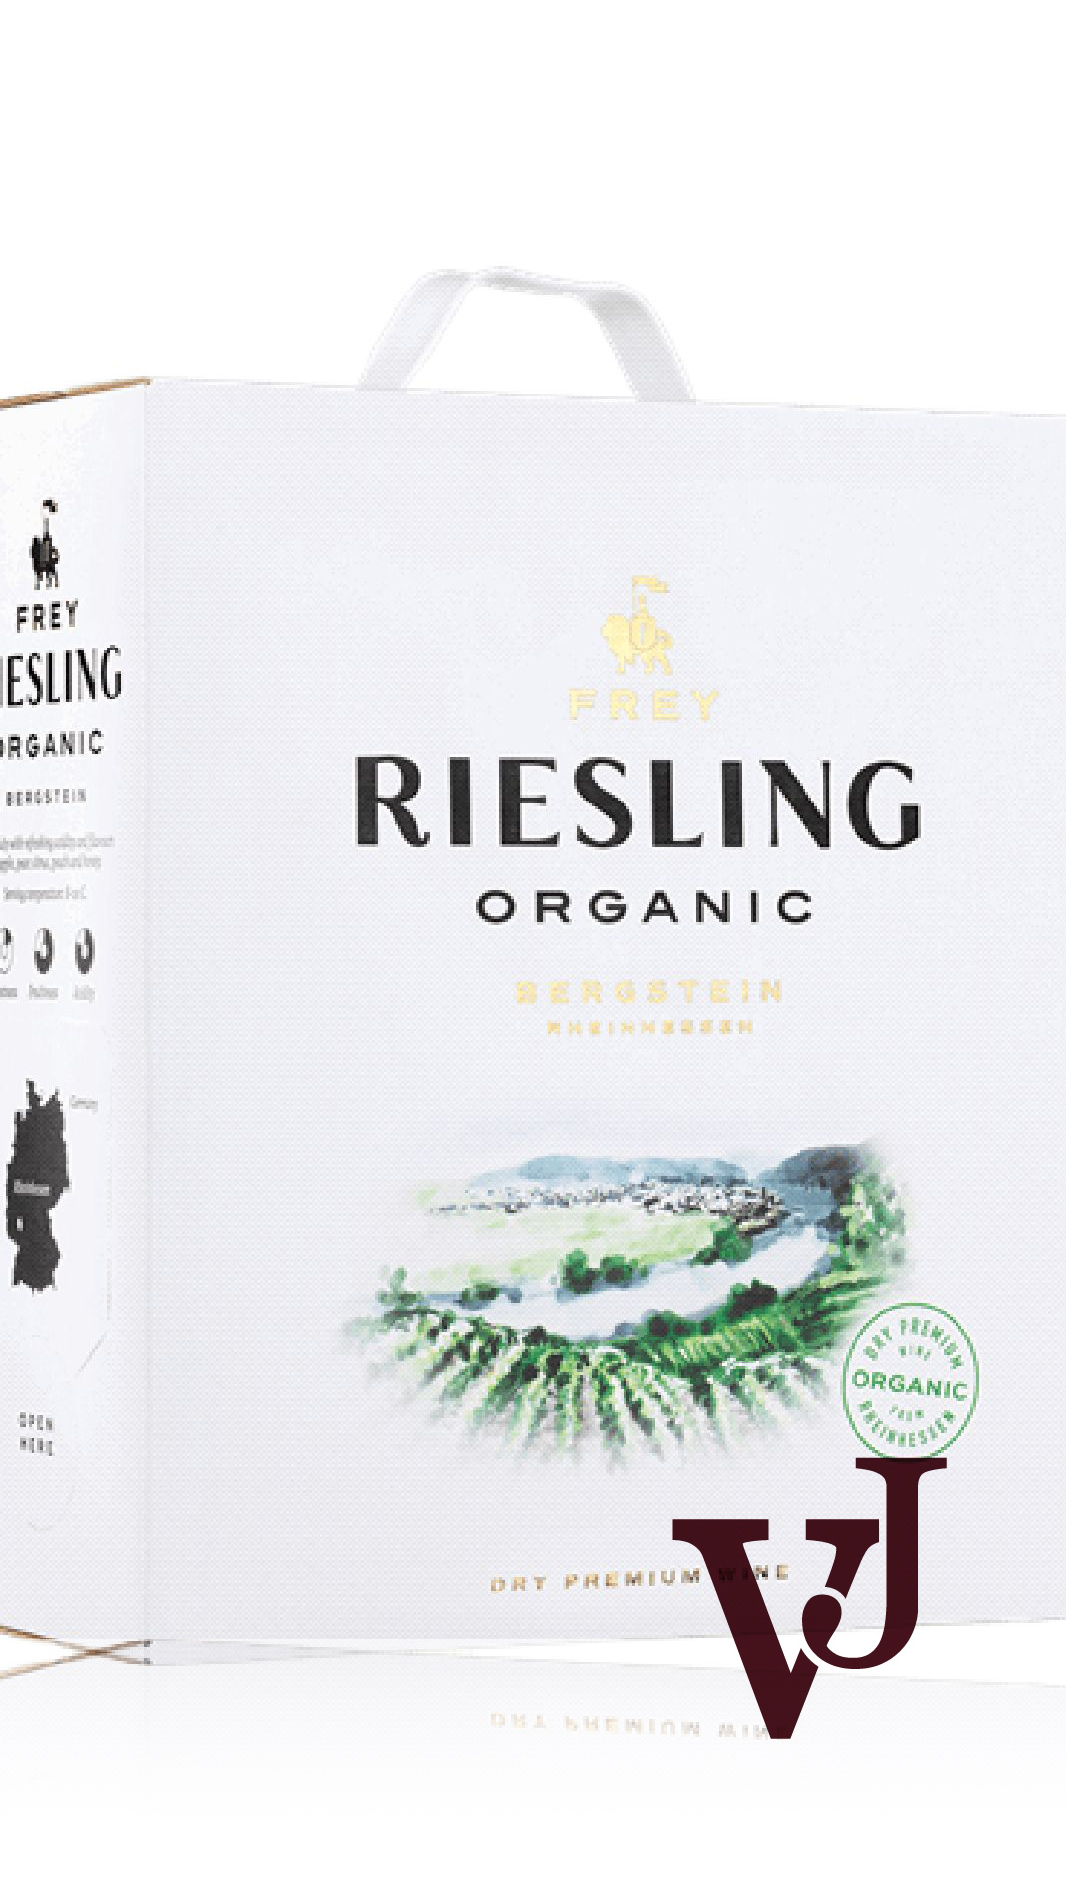 Vitt Vin - Frey Organic Riesling Bergstein artikel nummer 669607 från producenten Weingut Frey från området Tyskland